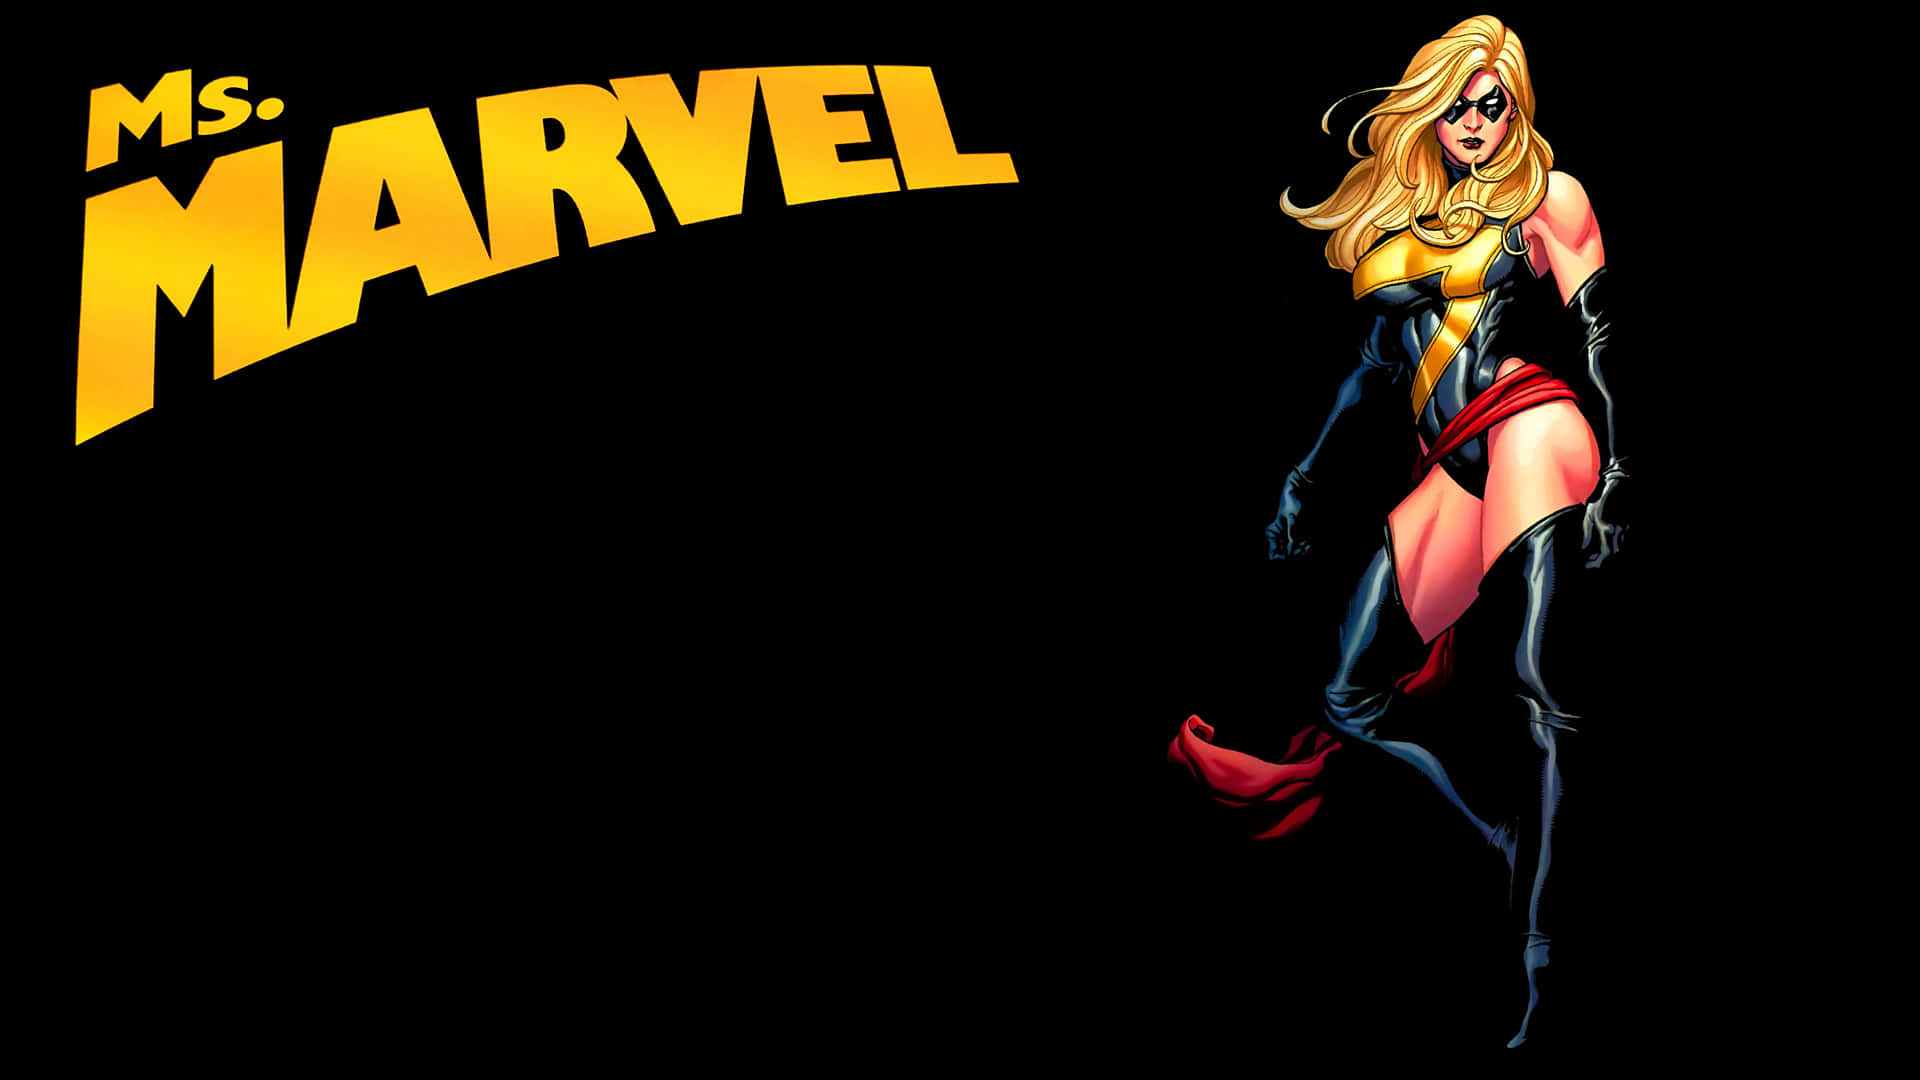 Osfundos De Tela De Computador Ou Celular Baseados Na Personagem Carol Danvers, Também Conhecida Como Capitã Marvel Da Marvel, São Muito Populares.